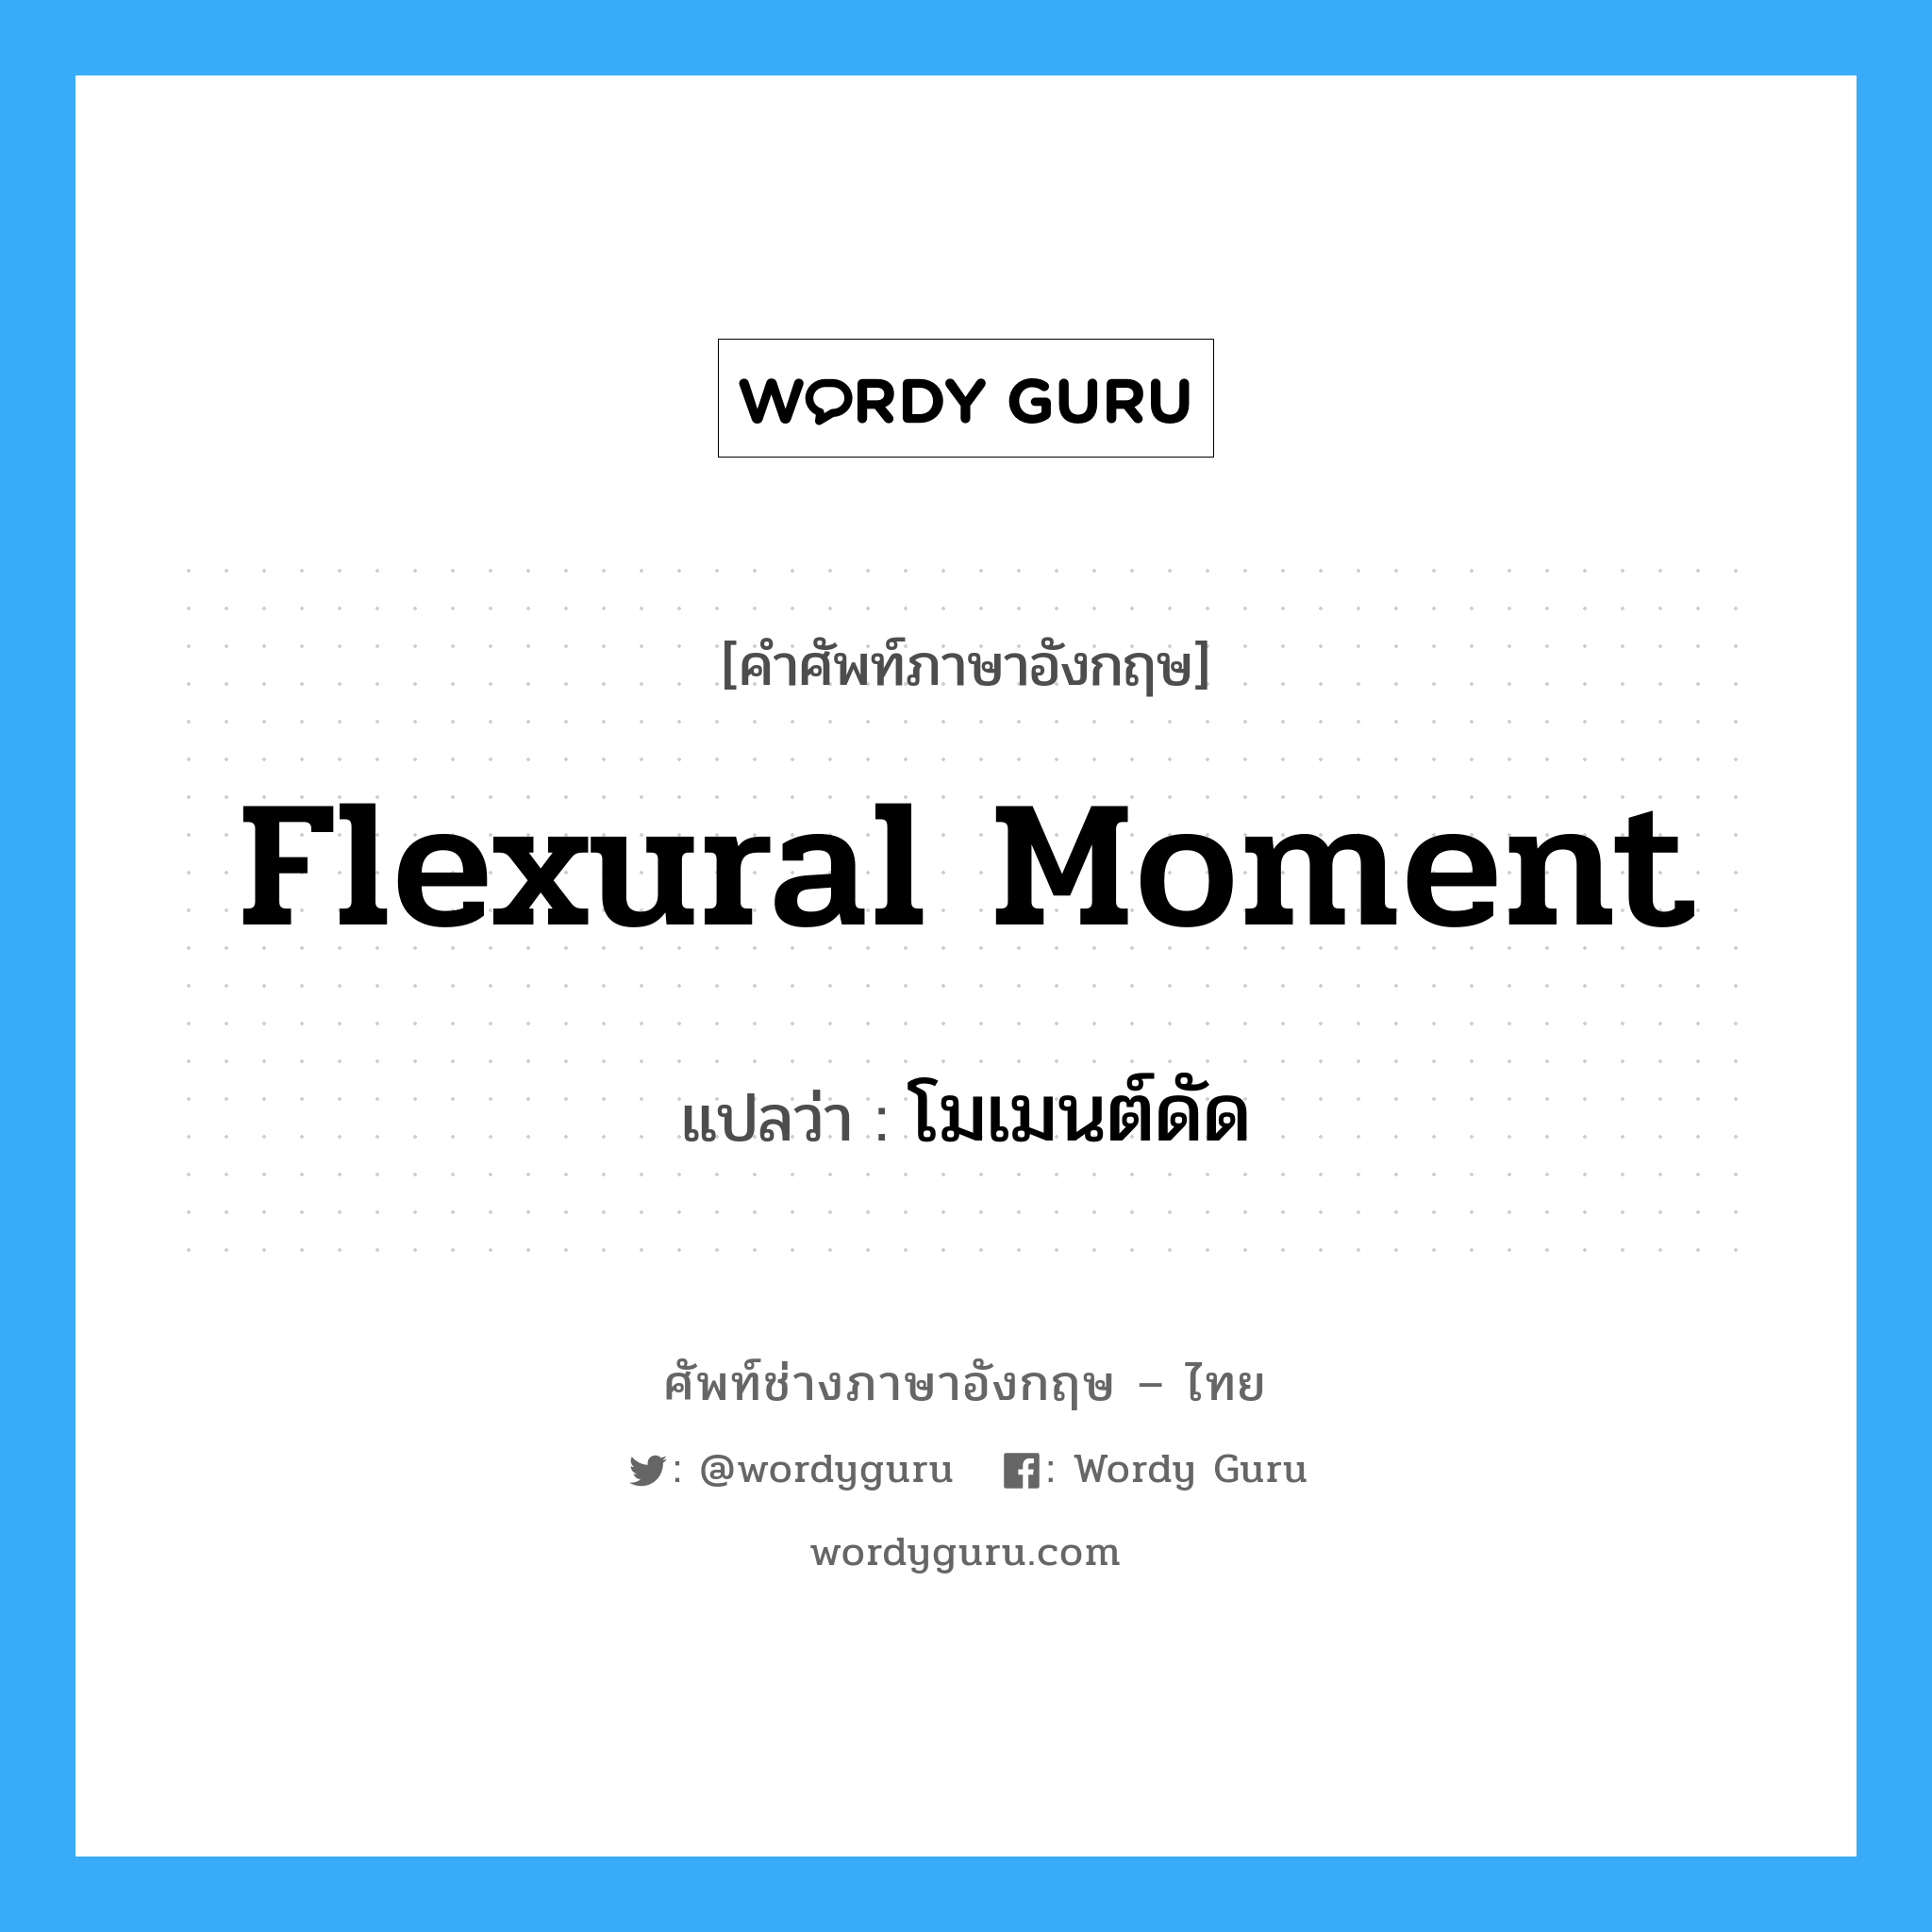 flexural moment แปลว่า?, คำศัพท์ช่างภาษาอังกฤษ - ไทย flexural moment คำศัพท์ภาษาอังกฤษ flexural moment แปลว่า โมเมนต์ดัด